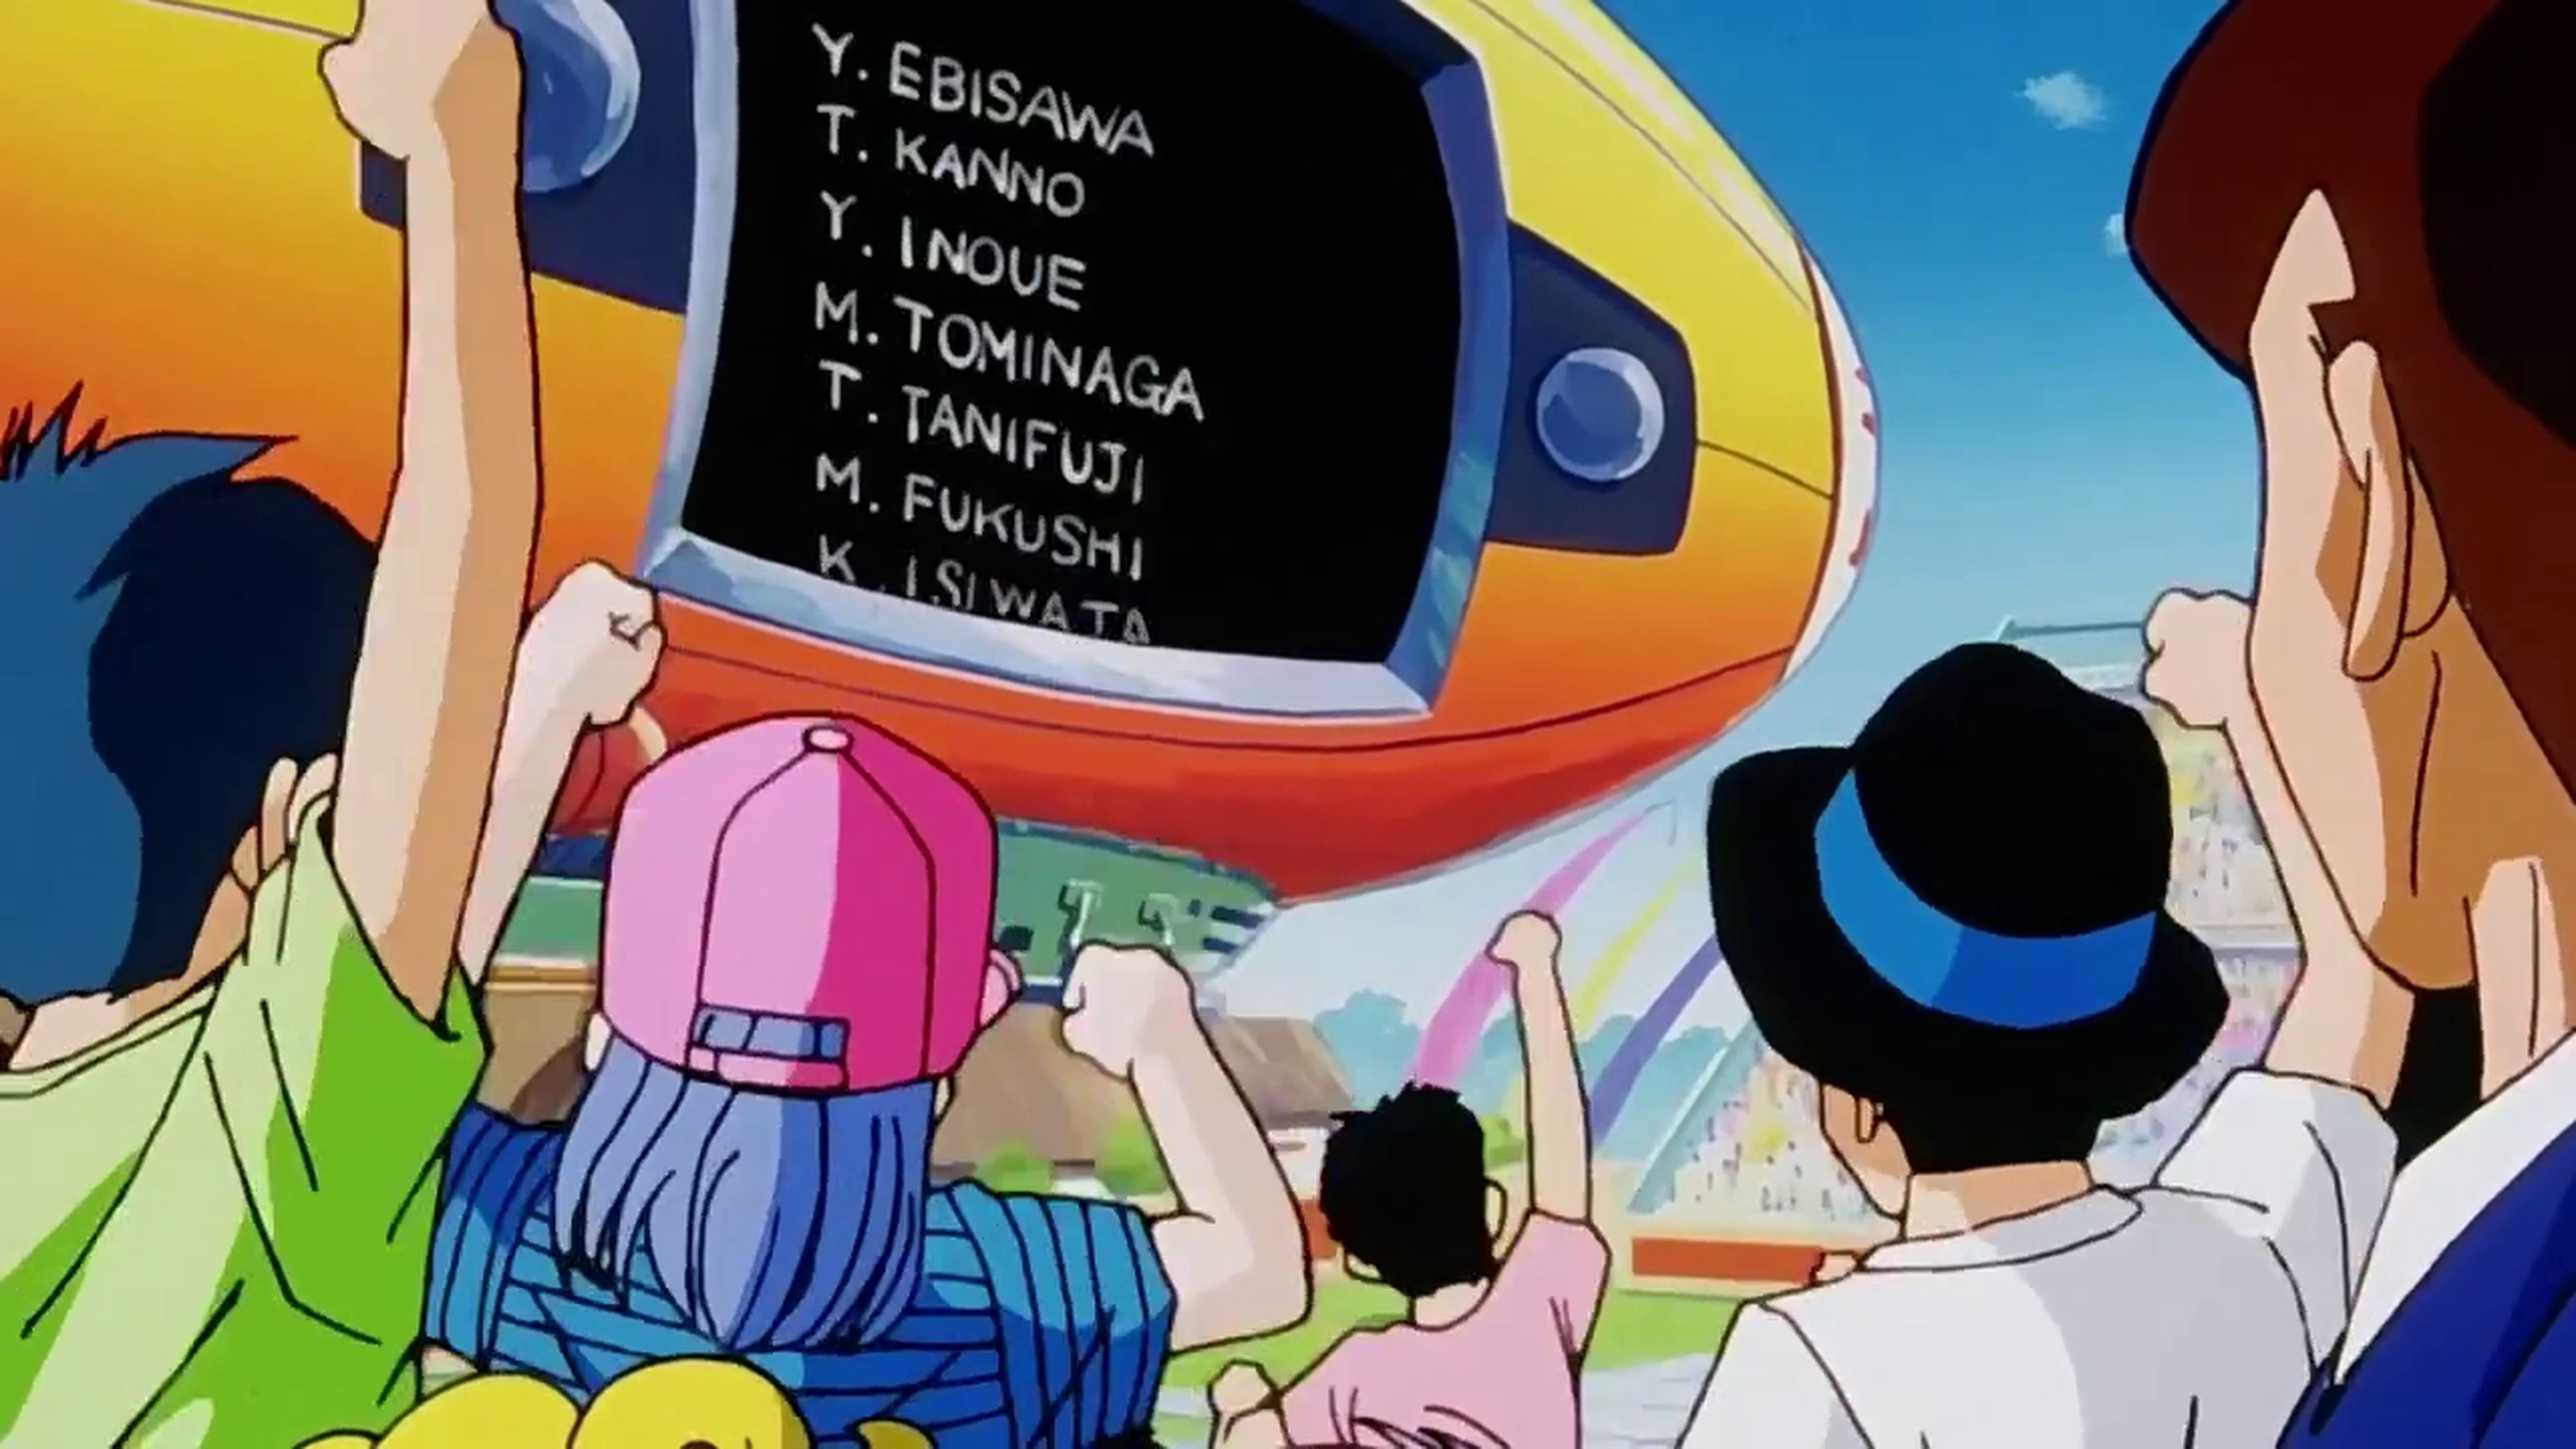 Dragon Ball Z - Crítica del capítulo 210 en el que Cell venció a Goku y sus amigos en una película absurda